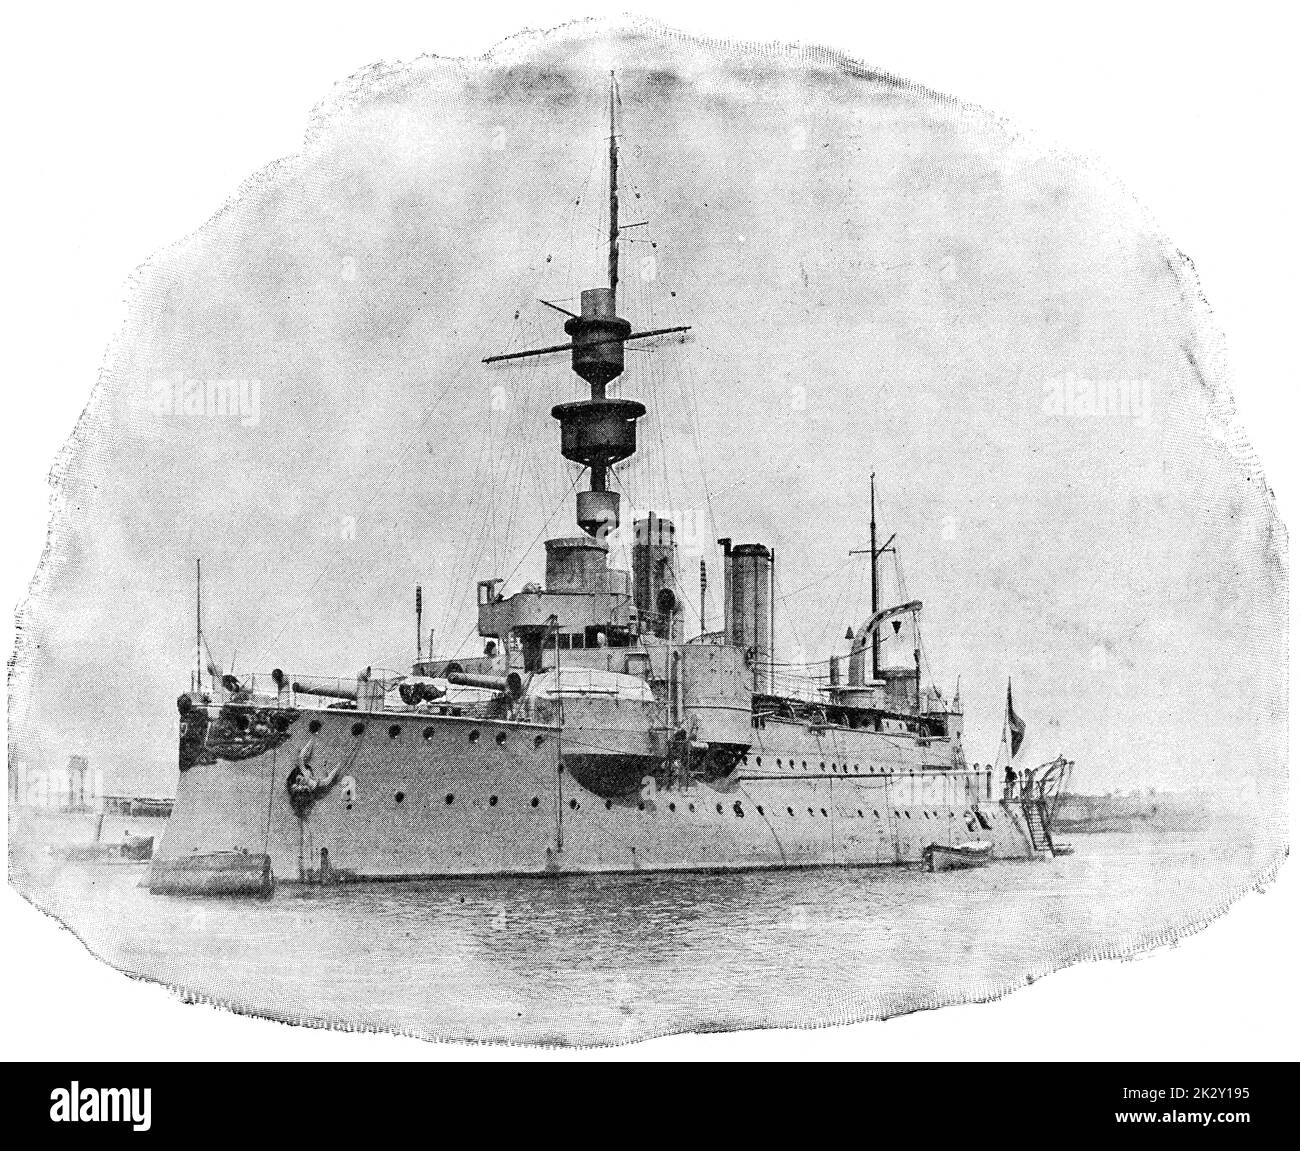 SMS Aegir (1895) - le deuxième et dernier membre de la classe Odin des navires de défense côtière construits pour la Marine impériale allemande. Illustration du 19e siècle. Allemagne. Arrière-plan blanc. Banque D'Images